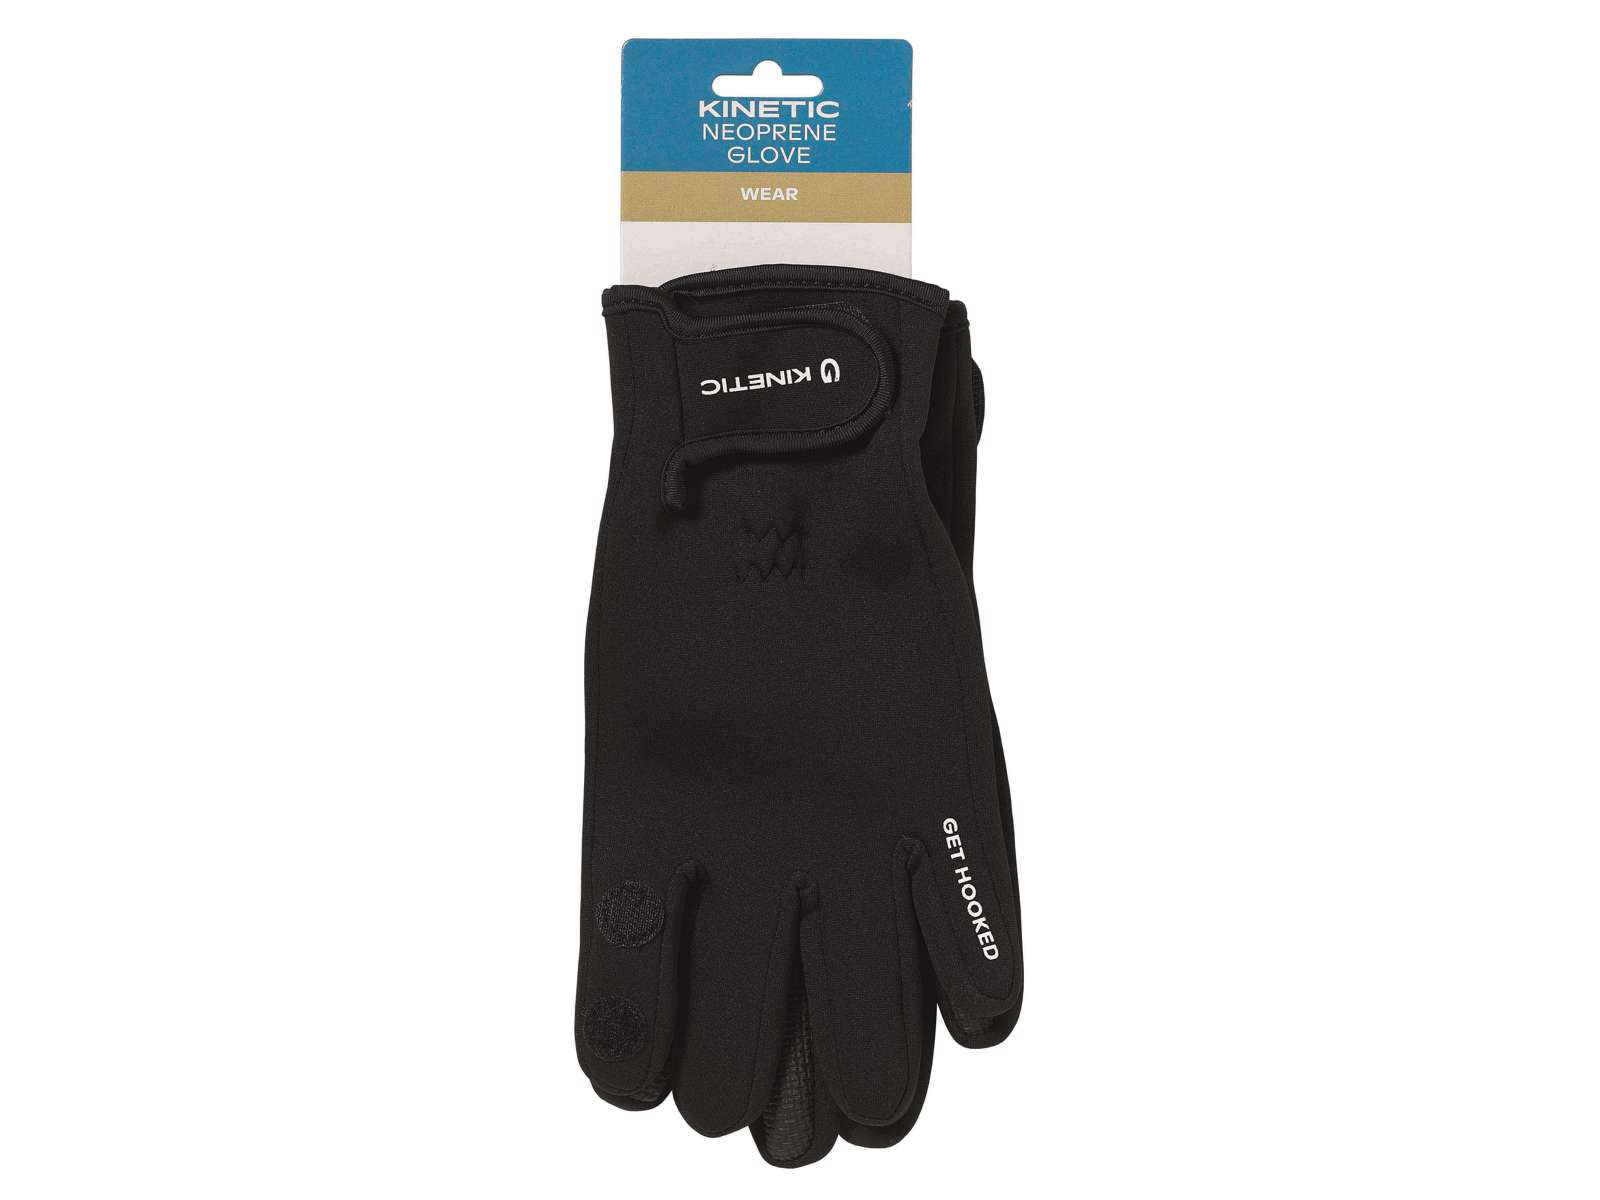 Snowbee Lightweight Neoprene Gloves - Fishing Hunting Gloves